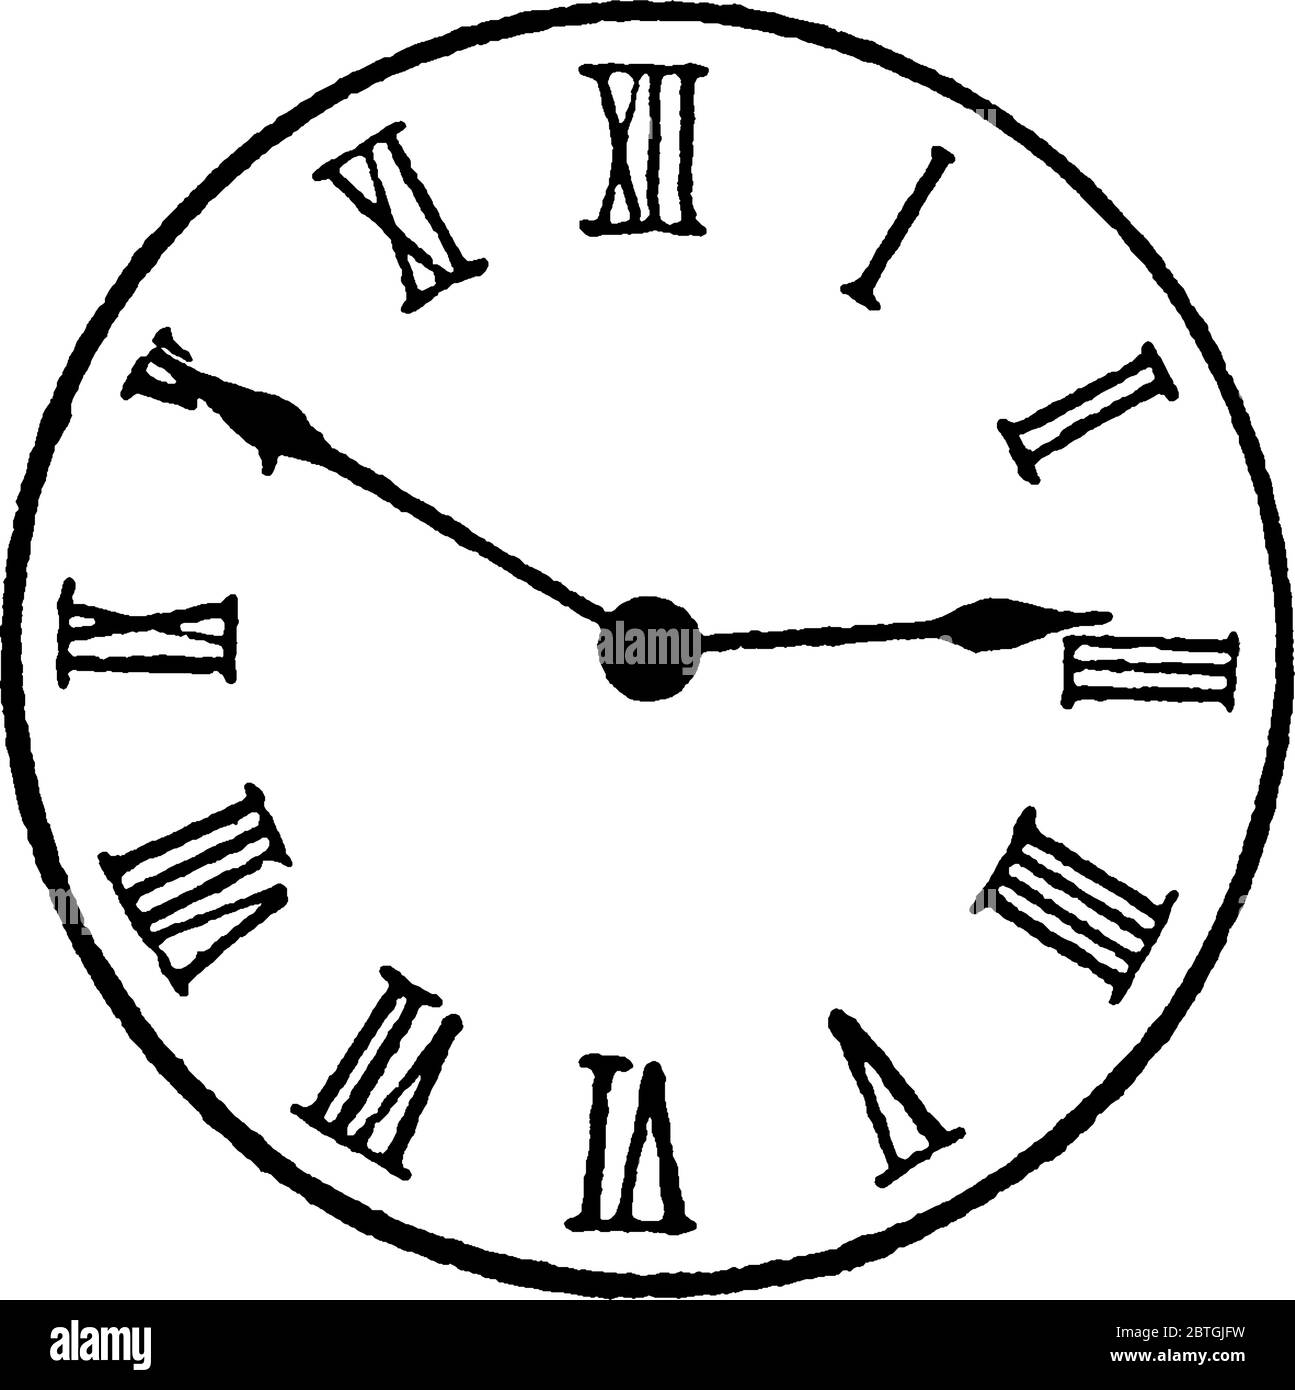 Figura che mostra l'orologio analogico con numeri romani, e le sue dieci  ultime cinque sull'orologio, disegno di linee vintage o illustrazione di  incisione Immagine e Vettoriale - Alamy